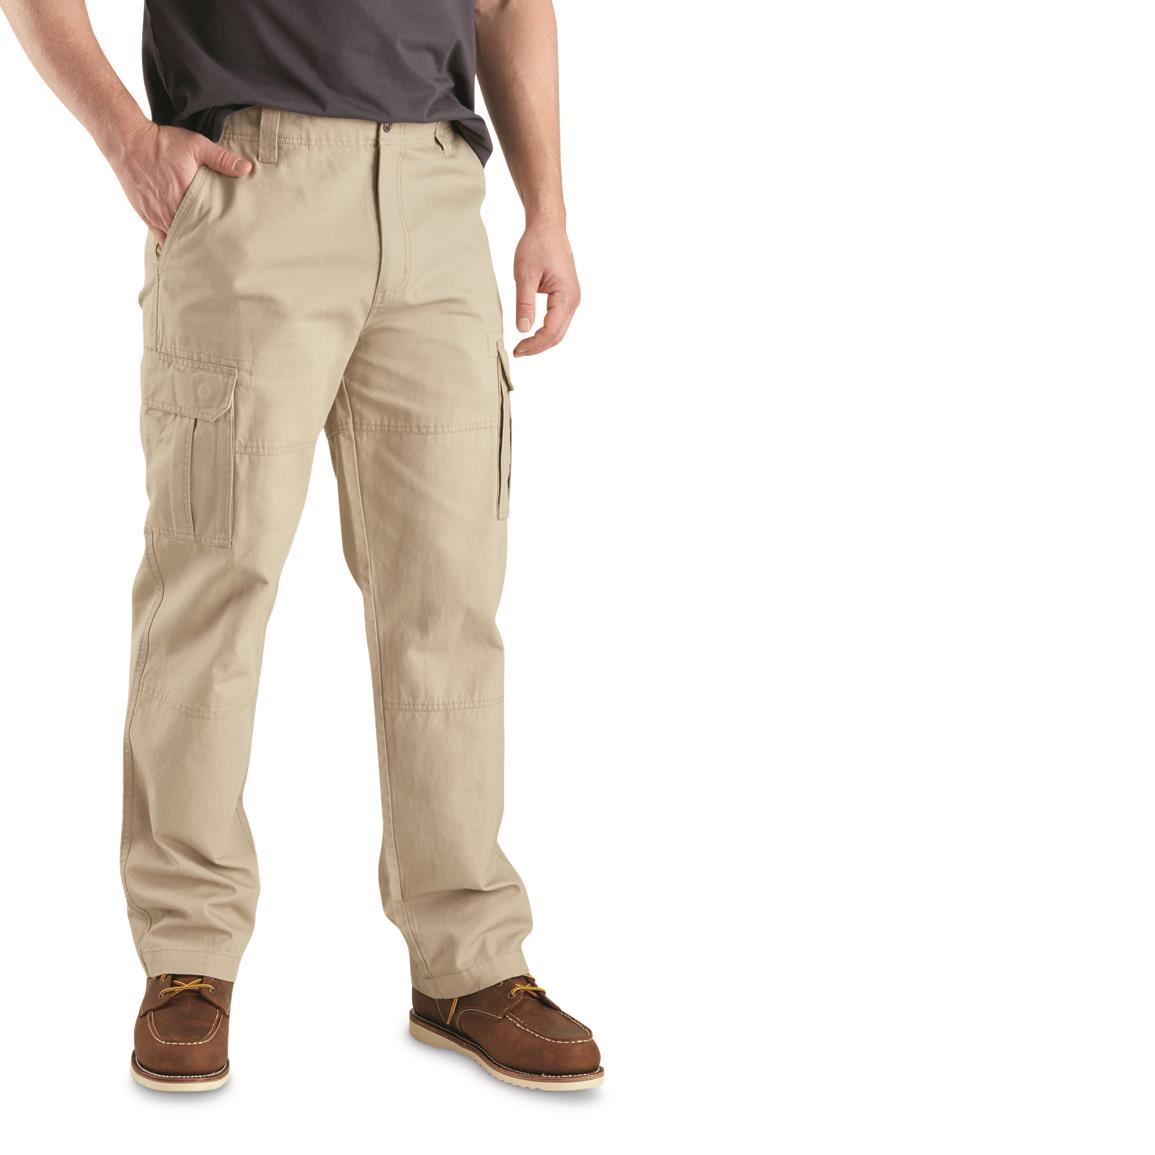 Guide Gear Men's Outdoor 2.0 Cotton Cargo Pants, Khaki